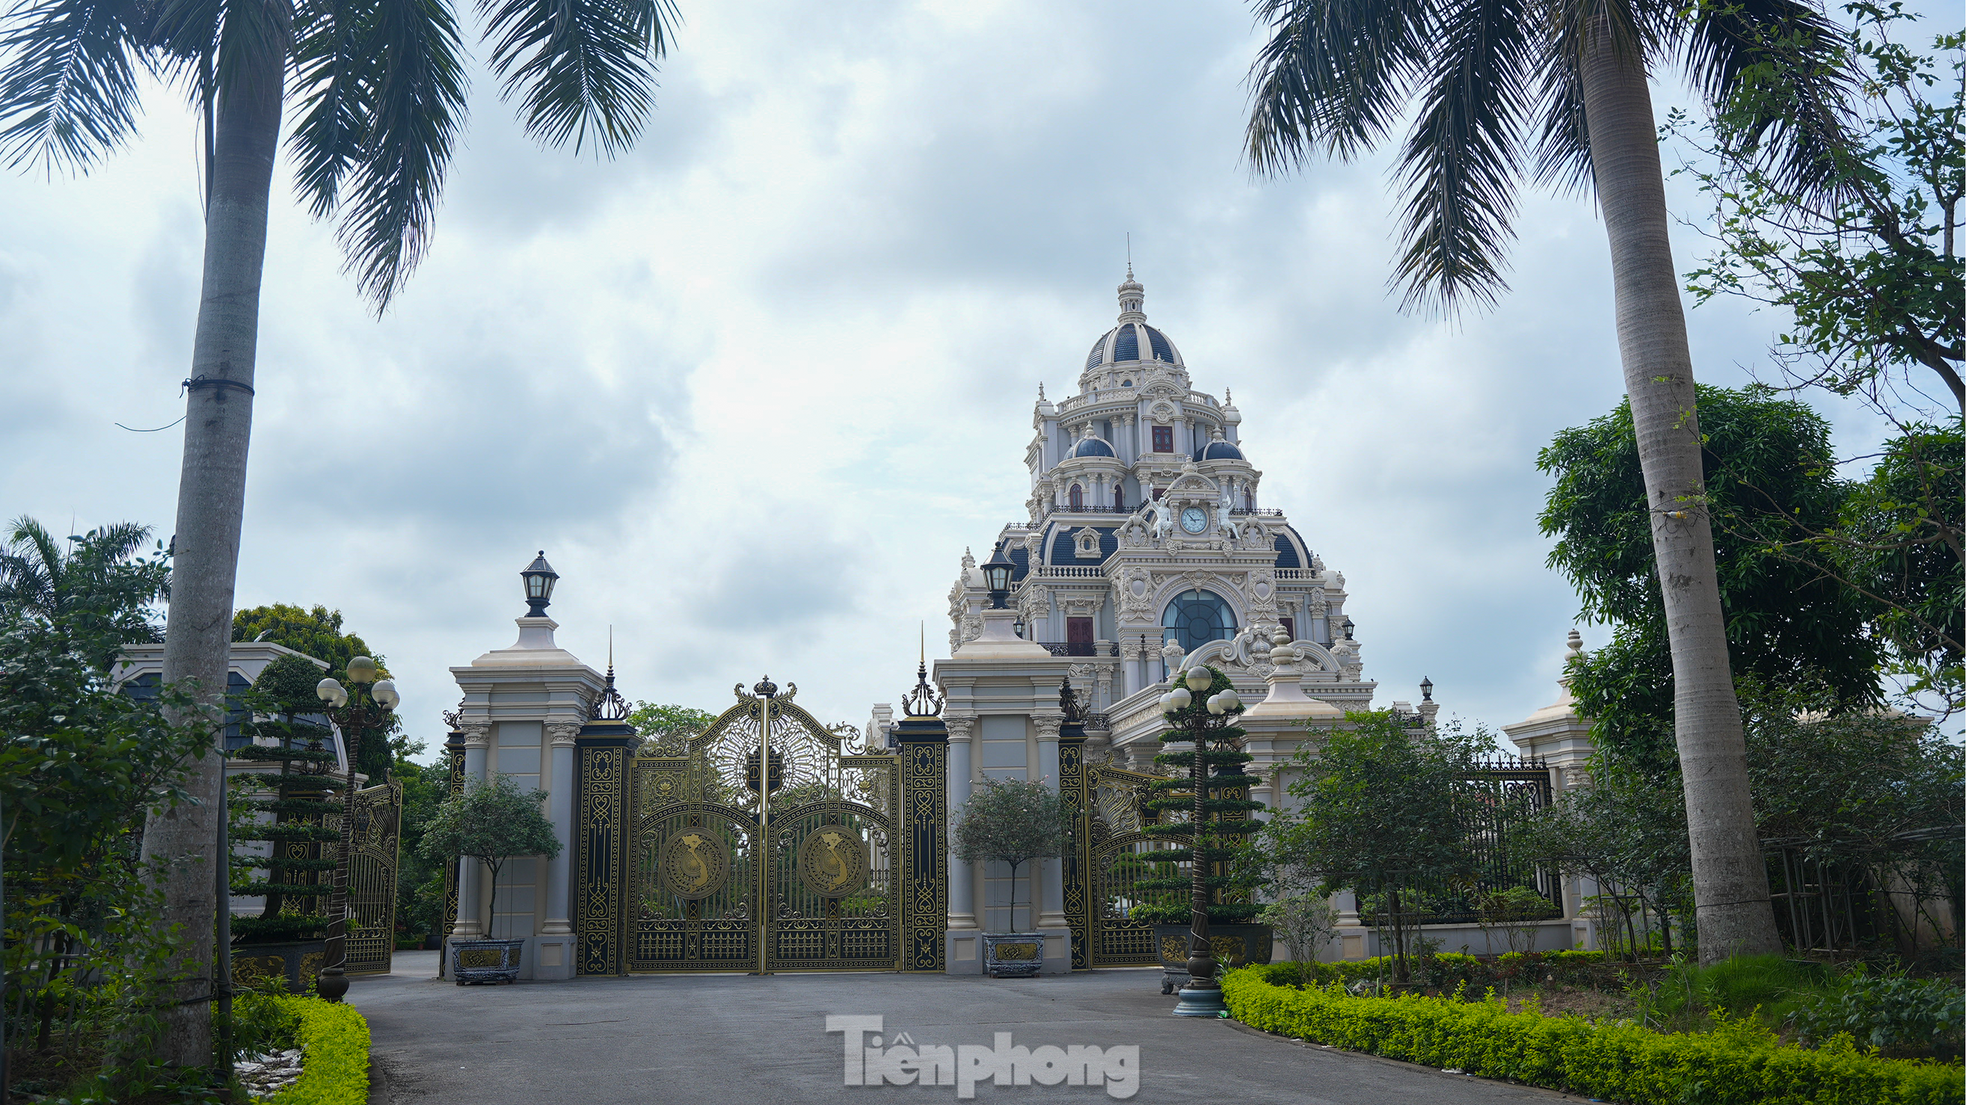 Ngôi làng tỷ phú nức tiếng tại Nam Định: Toàn dinh thự, lâu đài và tàu trăm tỷ xuôi ngược khắp muôn nơi